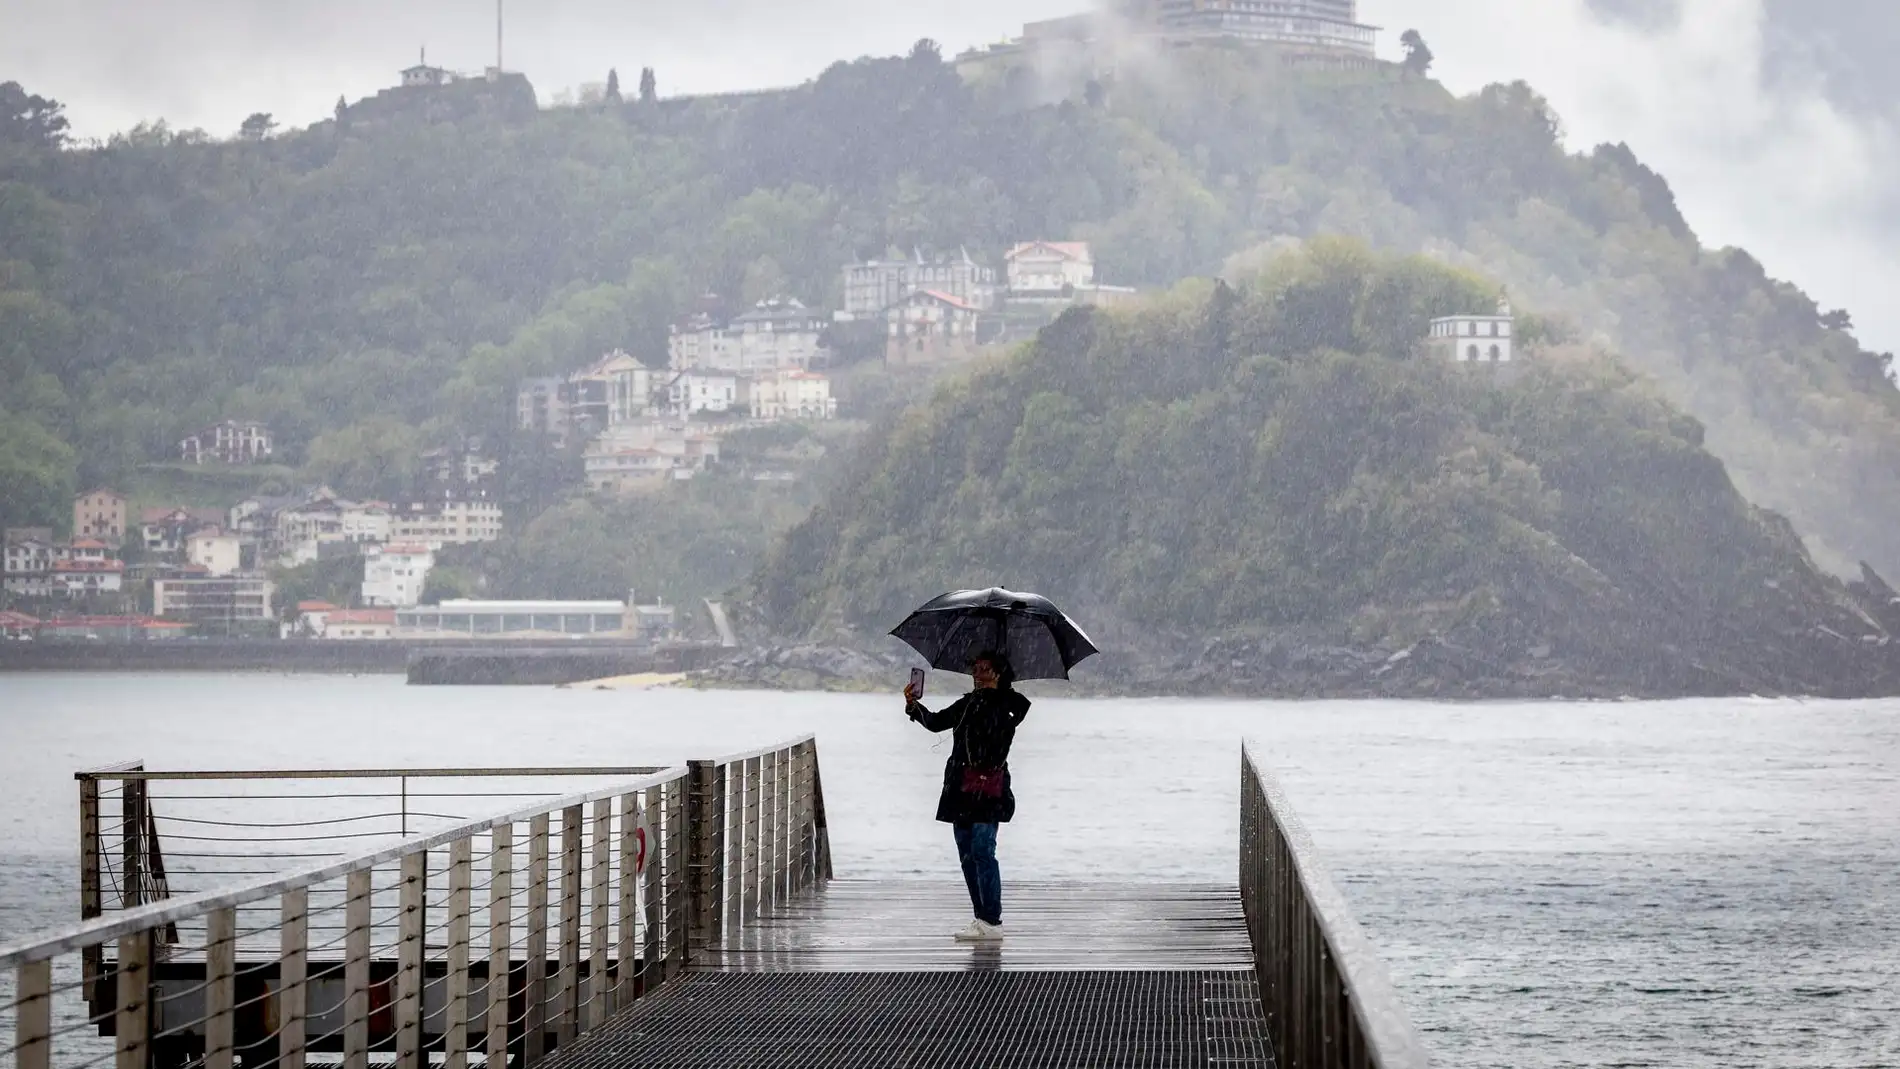 Tiempo en el puente de mayo: una borrasca atlántica que hará sacar el abrigo y el paraguas